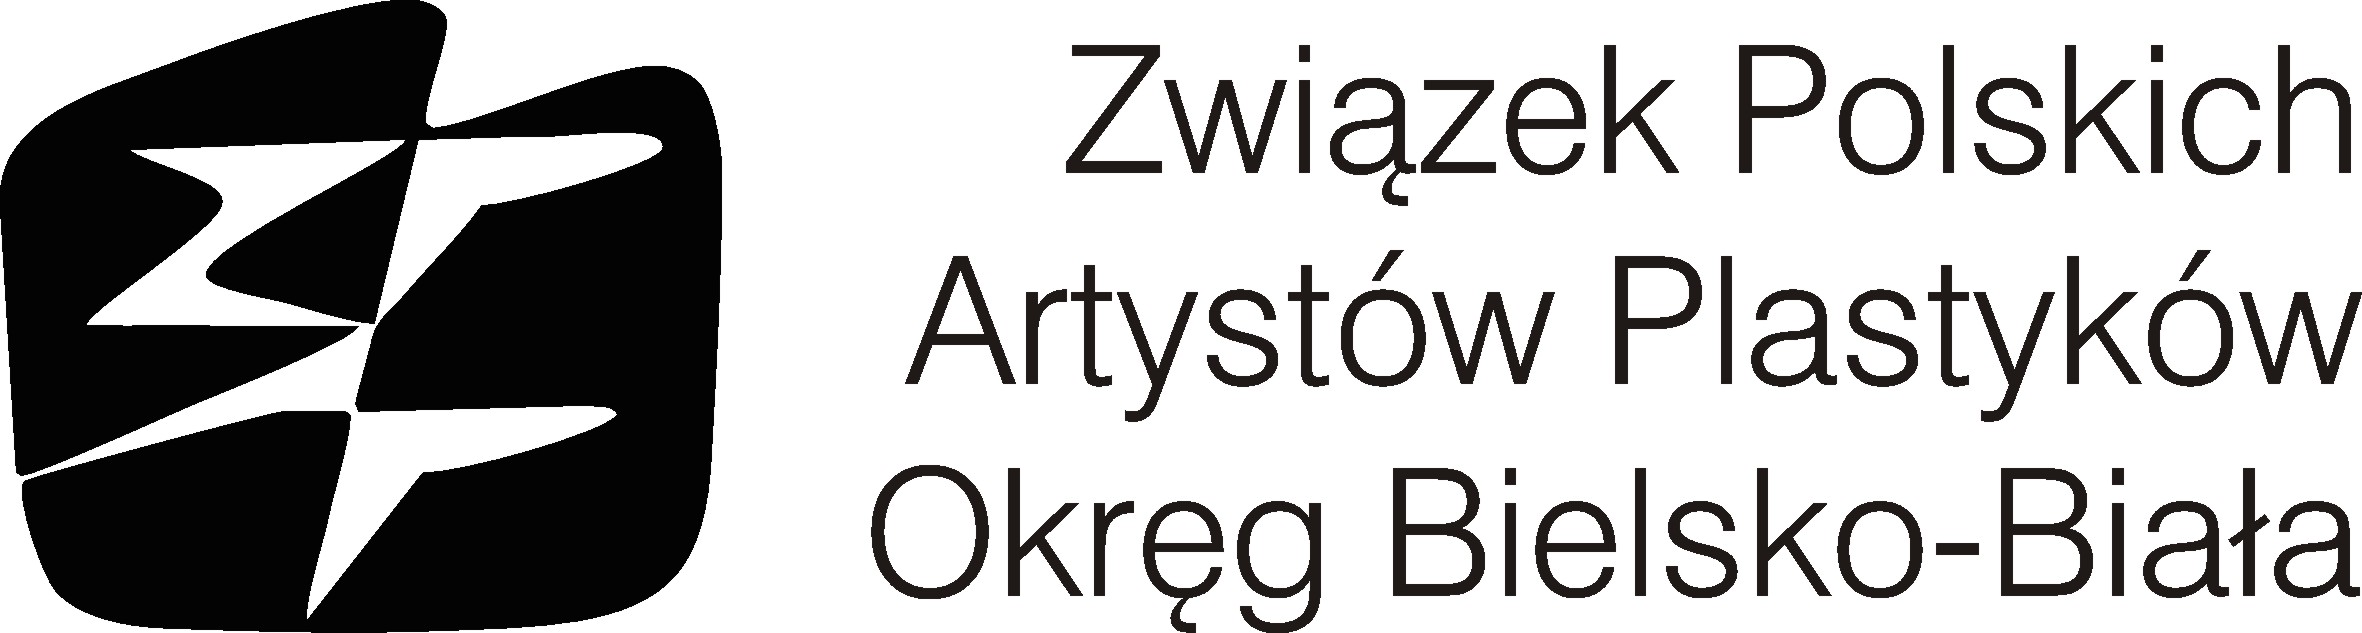 Związek Polskich Artystów Plastyków